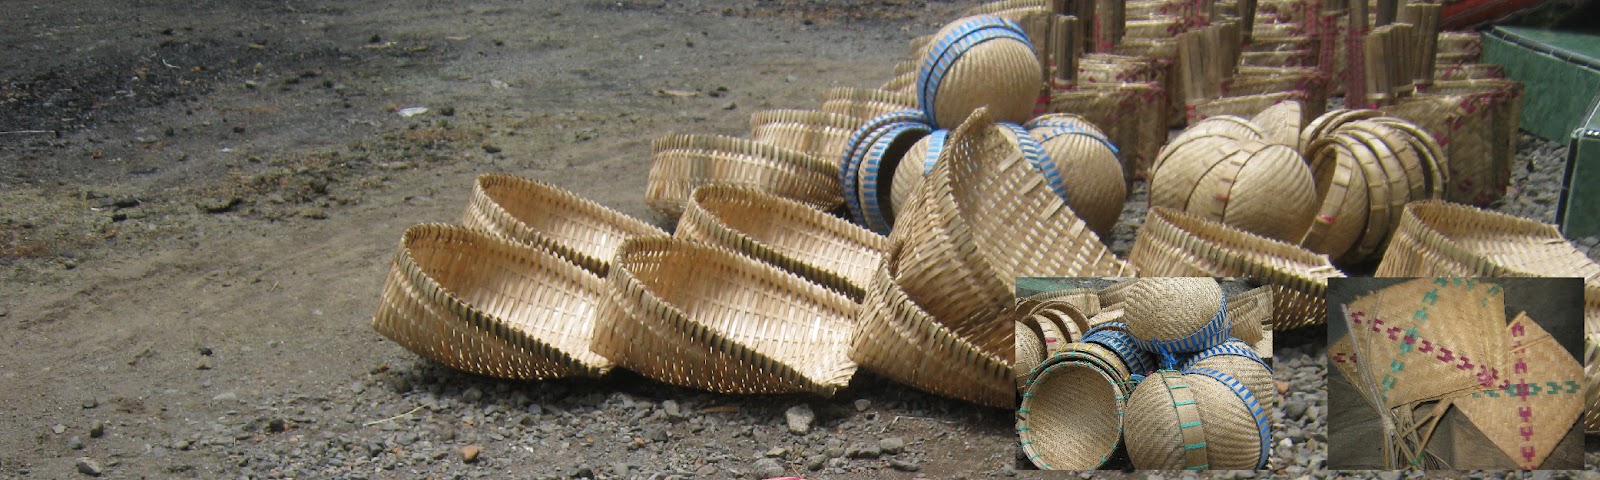  kerajinan  bambu  sidigede